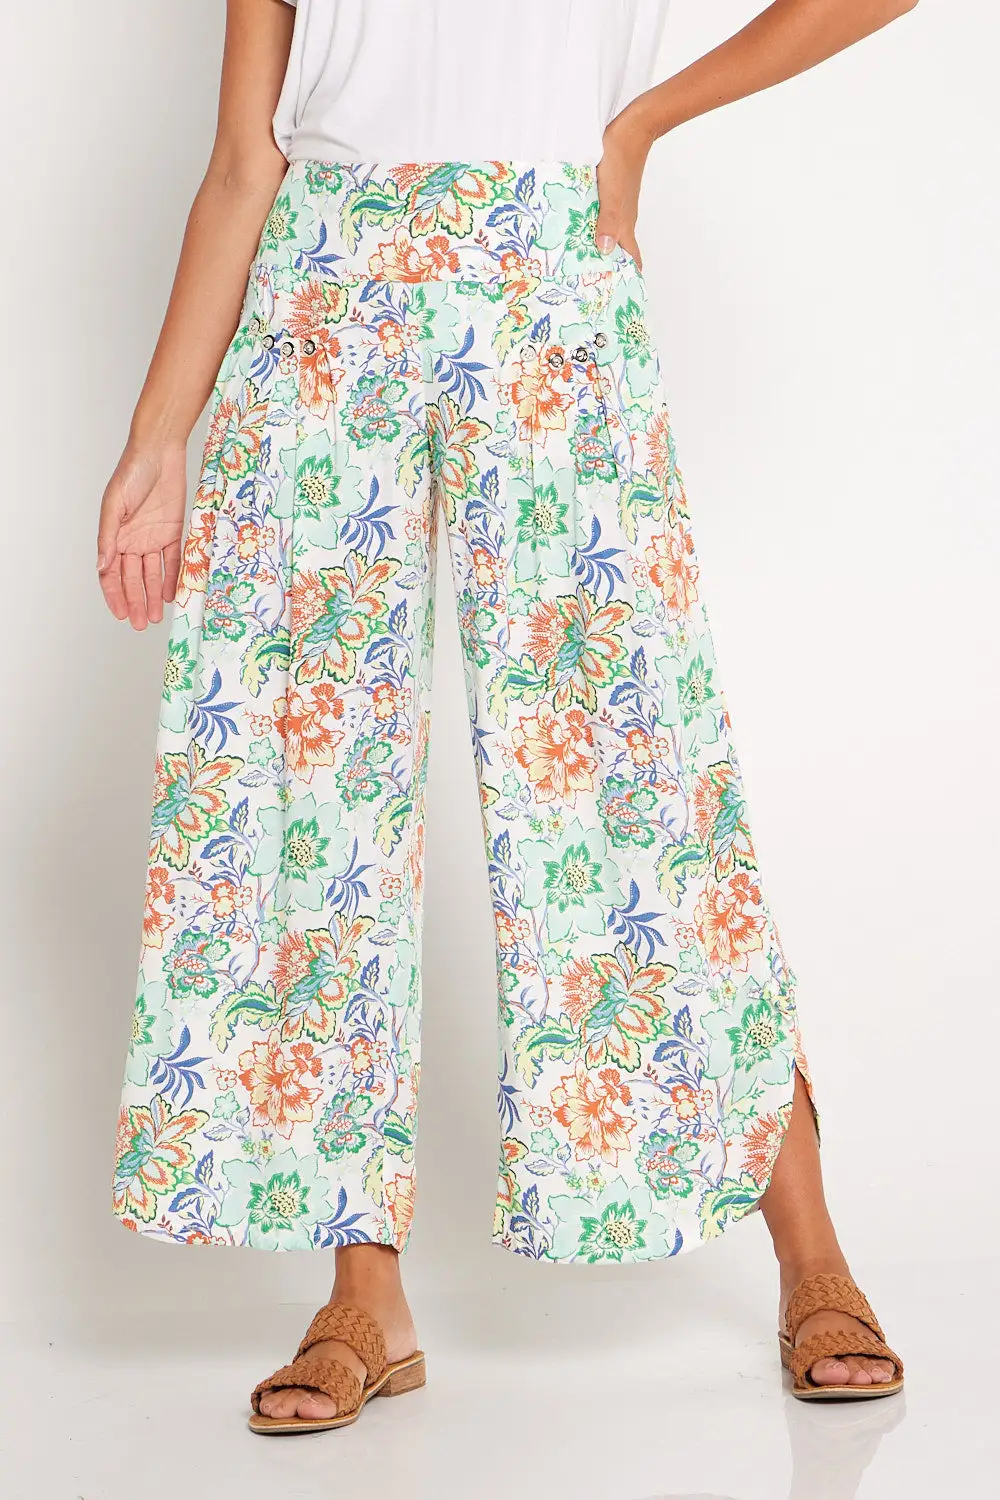 Cheyenne Pants - Floral Green